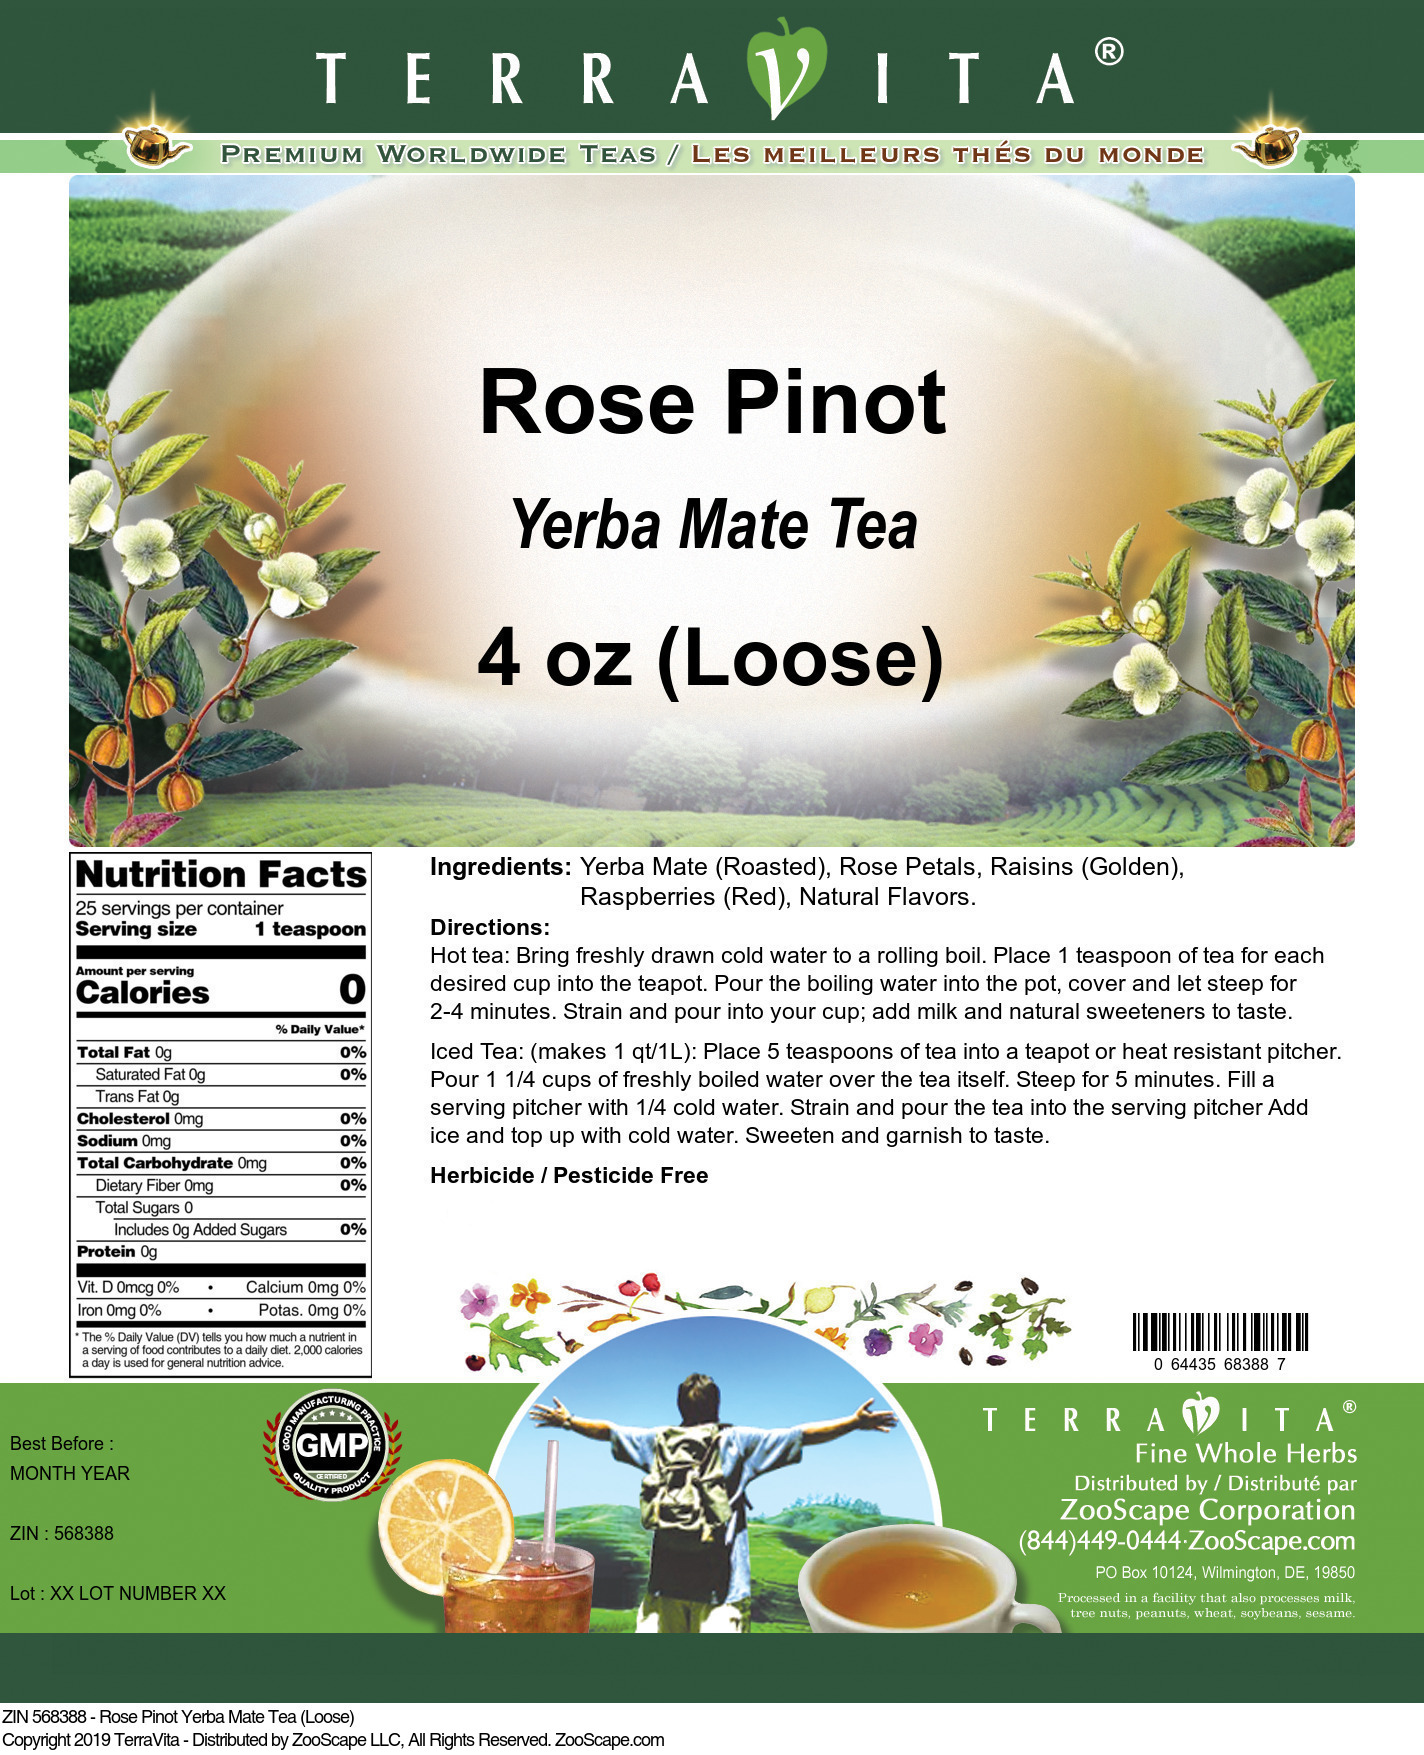 Rose Pinot Yerba Mate Tea (Loose) - Label